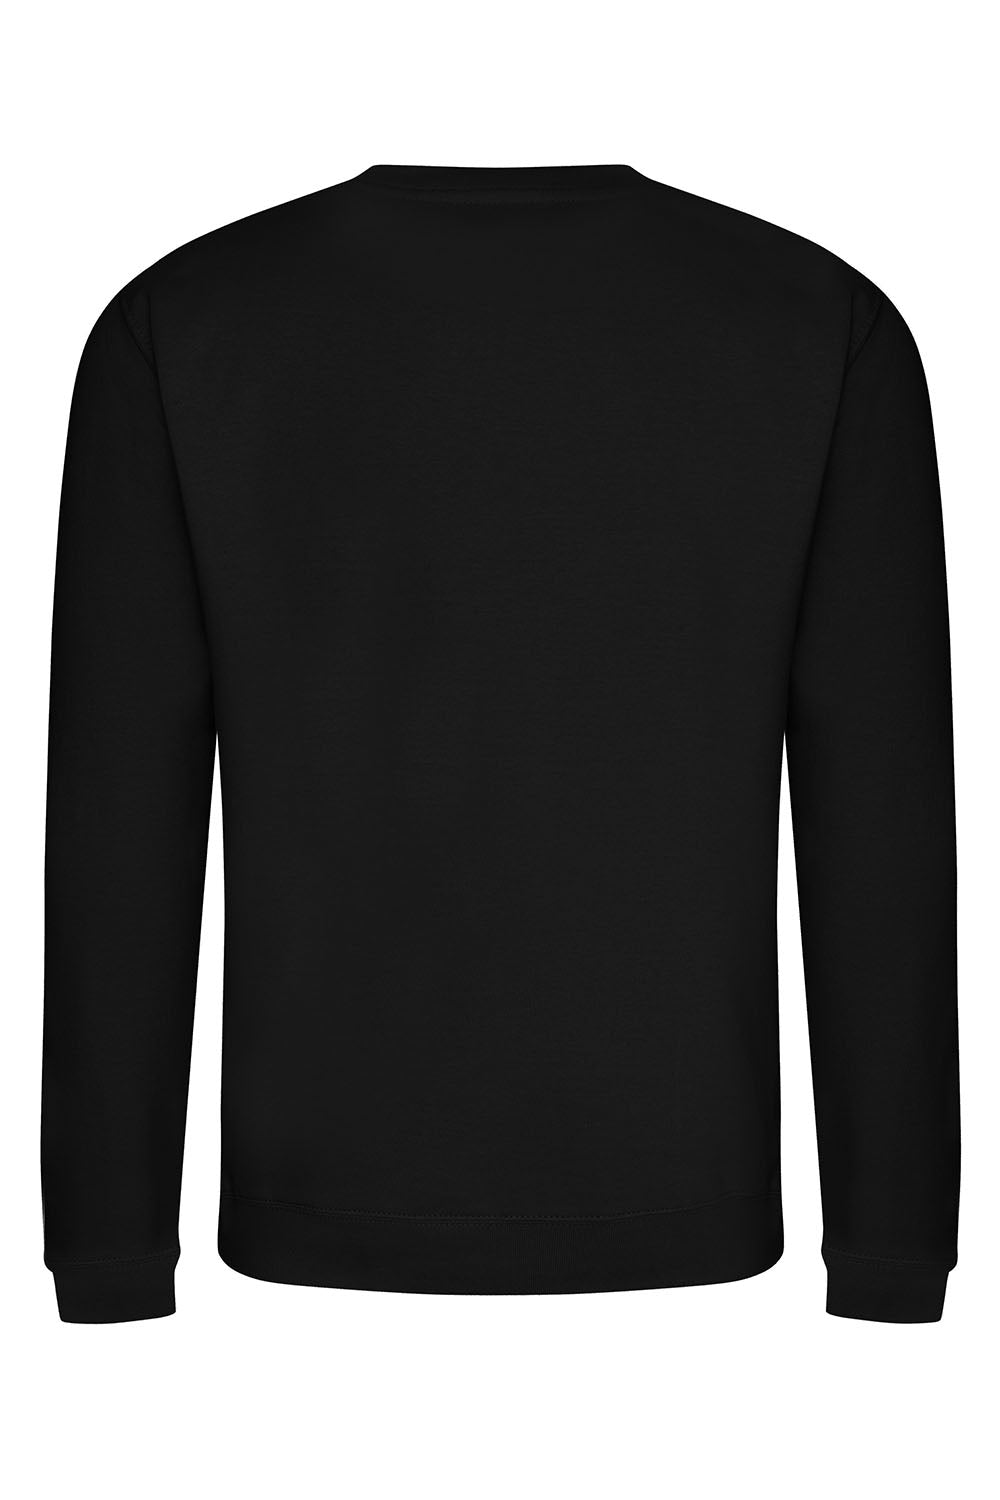 Happy Soul Sweatshirt In Black (Custom Pack)